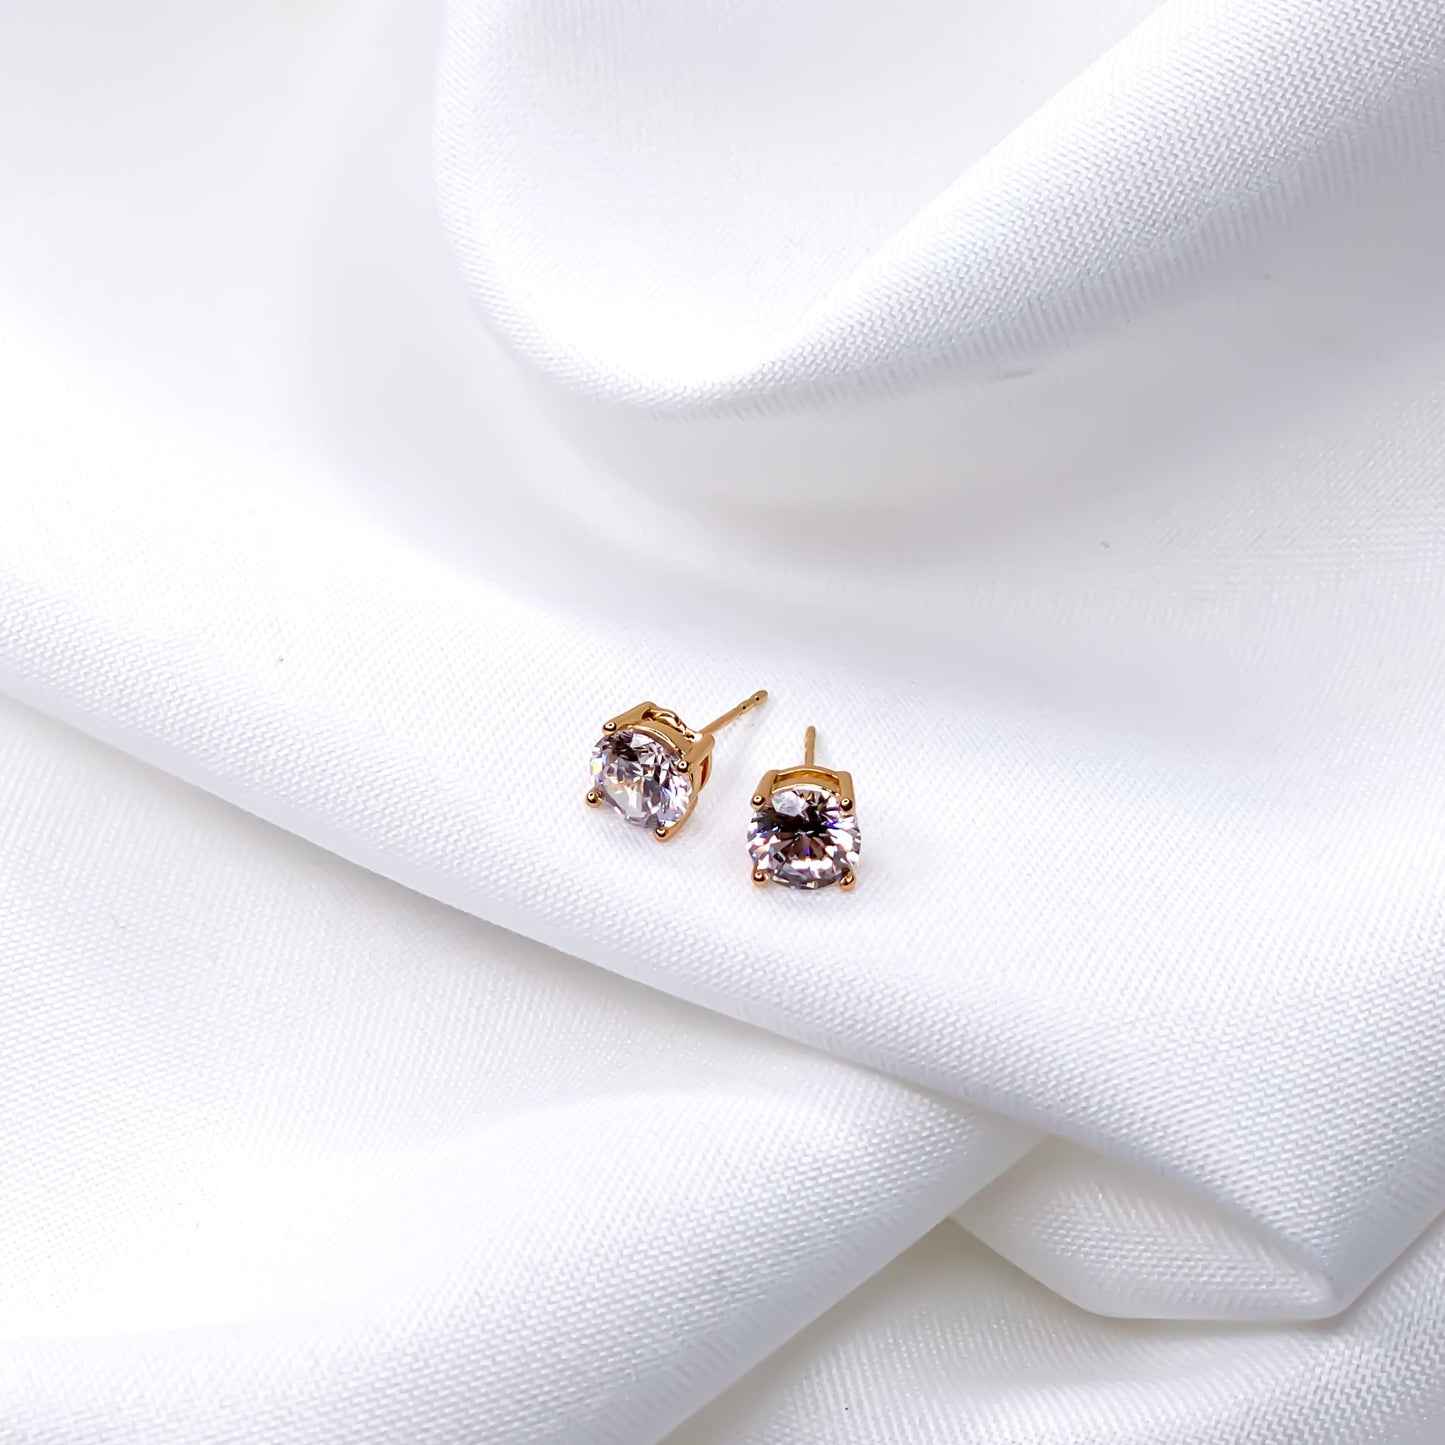 7mm gold cubic zirconia stud earrings